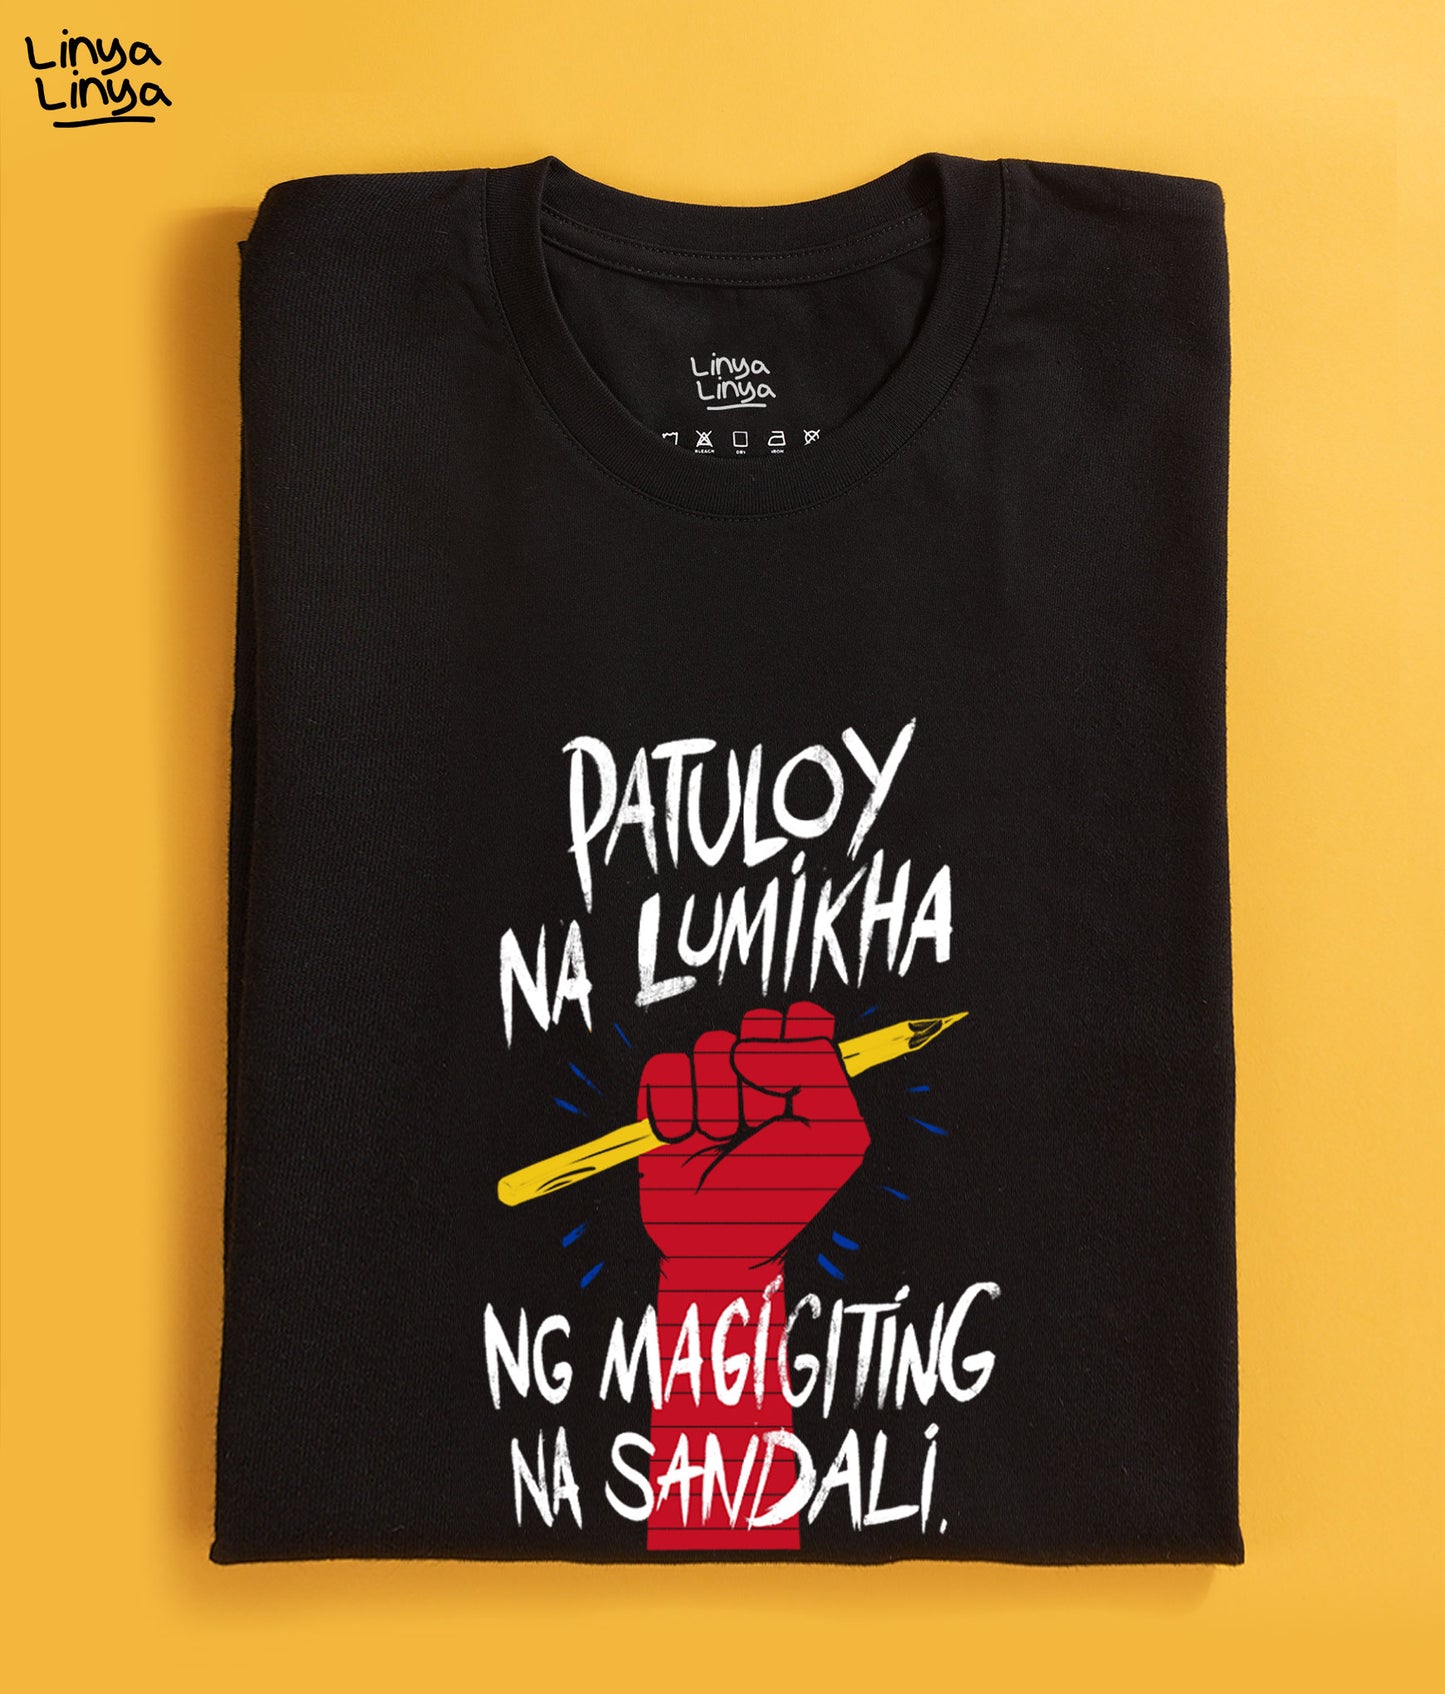 Linya-Linya X Lualhati Bautista - Patuloy Na Lumikha Ng Magigiting Na Sandali -Lapis (Black)